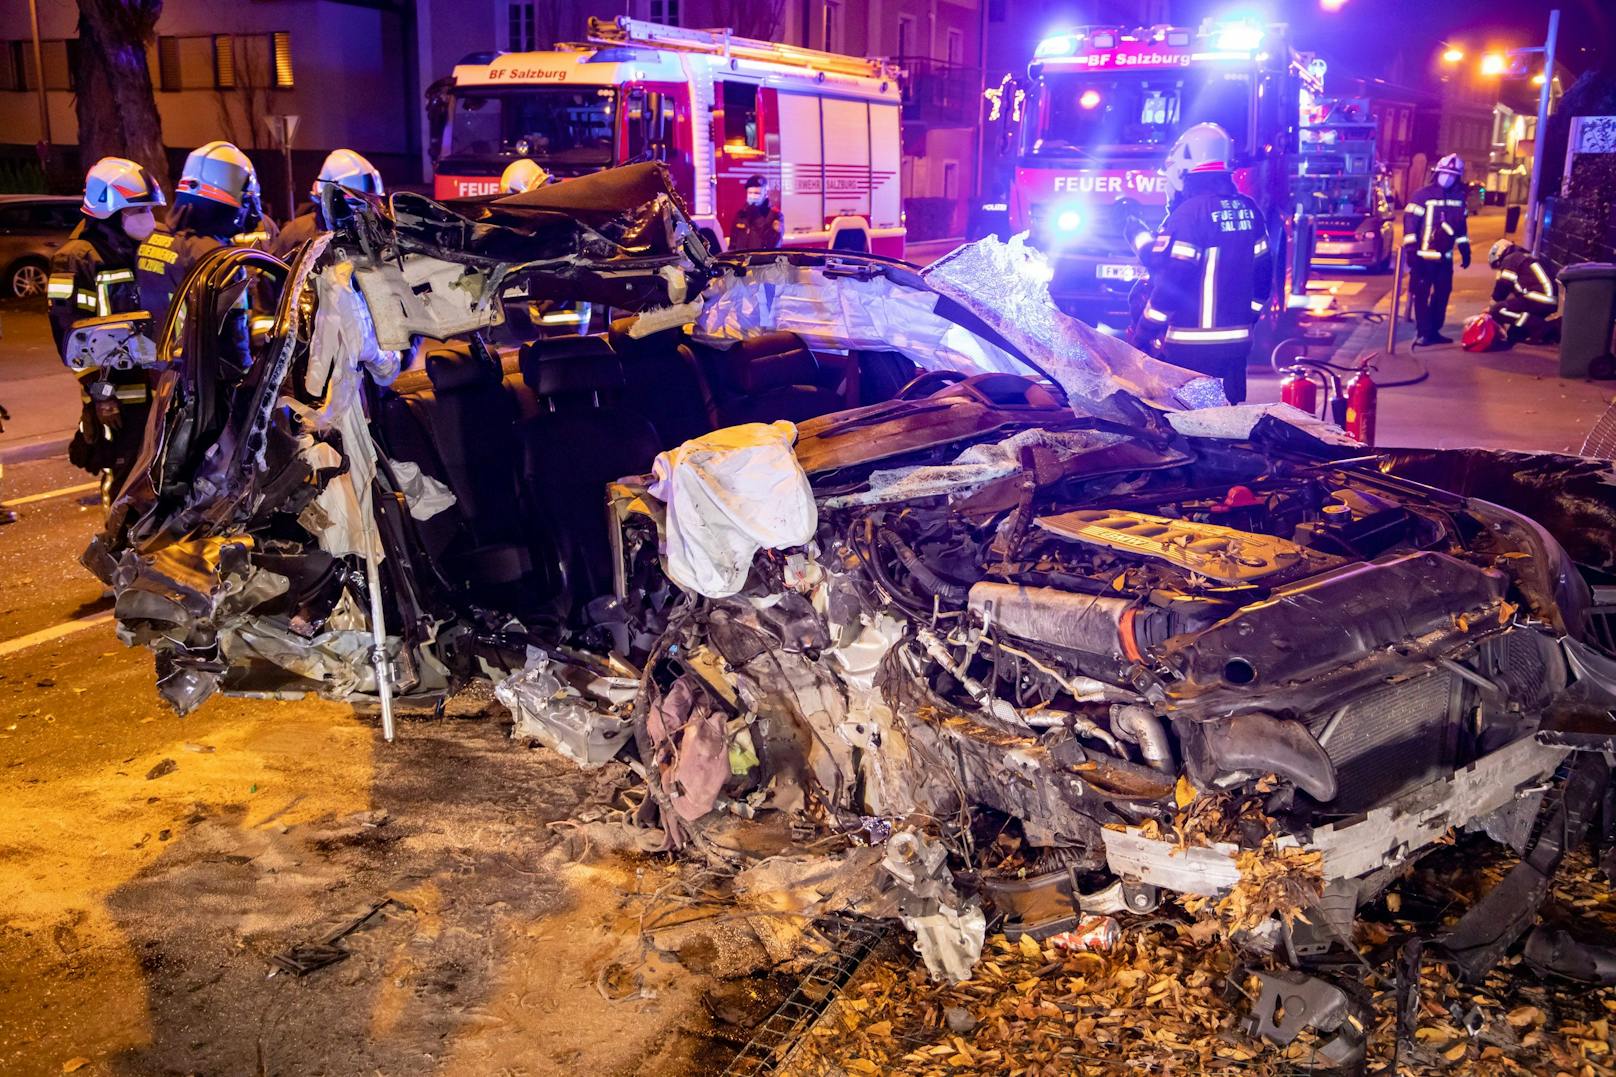 Spektakulärer Crash in der Nacht auf Dienstag in Salzburg! Ein Raser verlor die Kontrolle über seinen BMW, hob ab und prallte gegen einen Baum. Der Beifahrer musste von der Feuerwehr aus dem Wrack befreit werden.